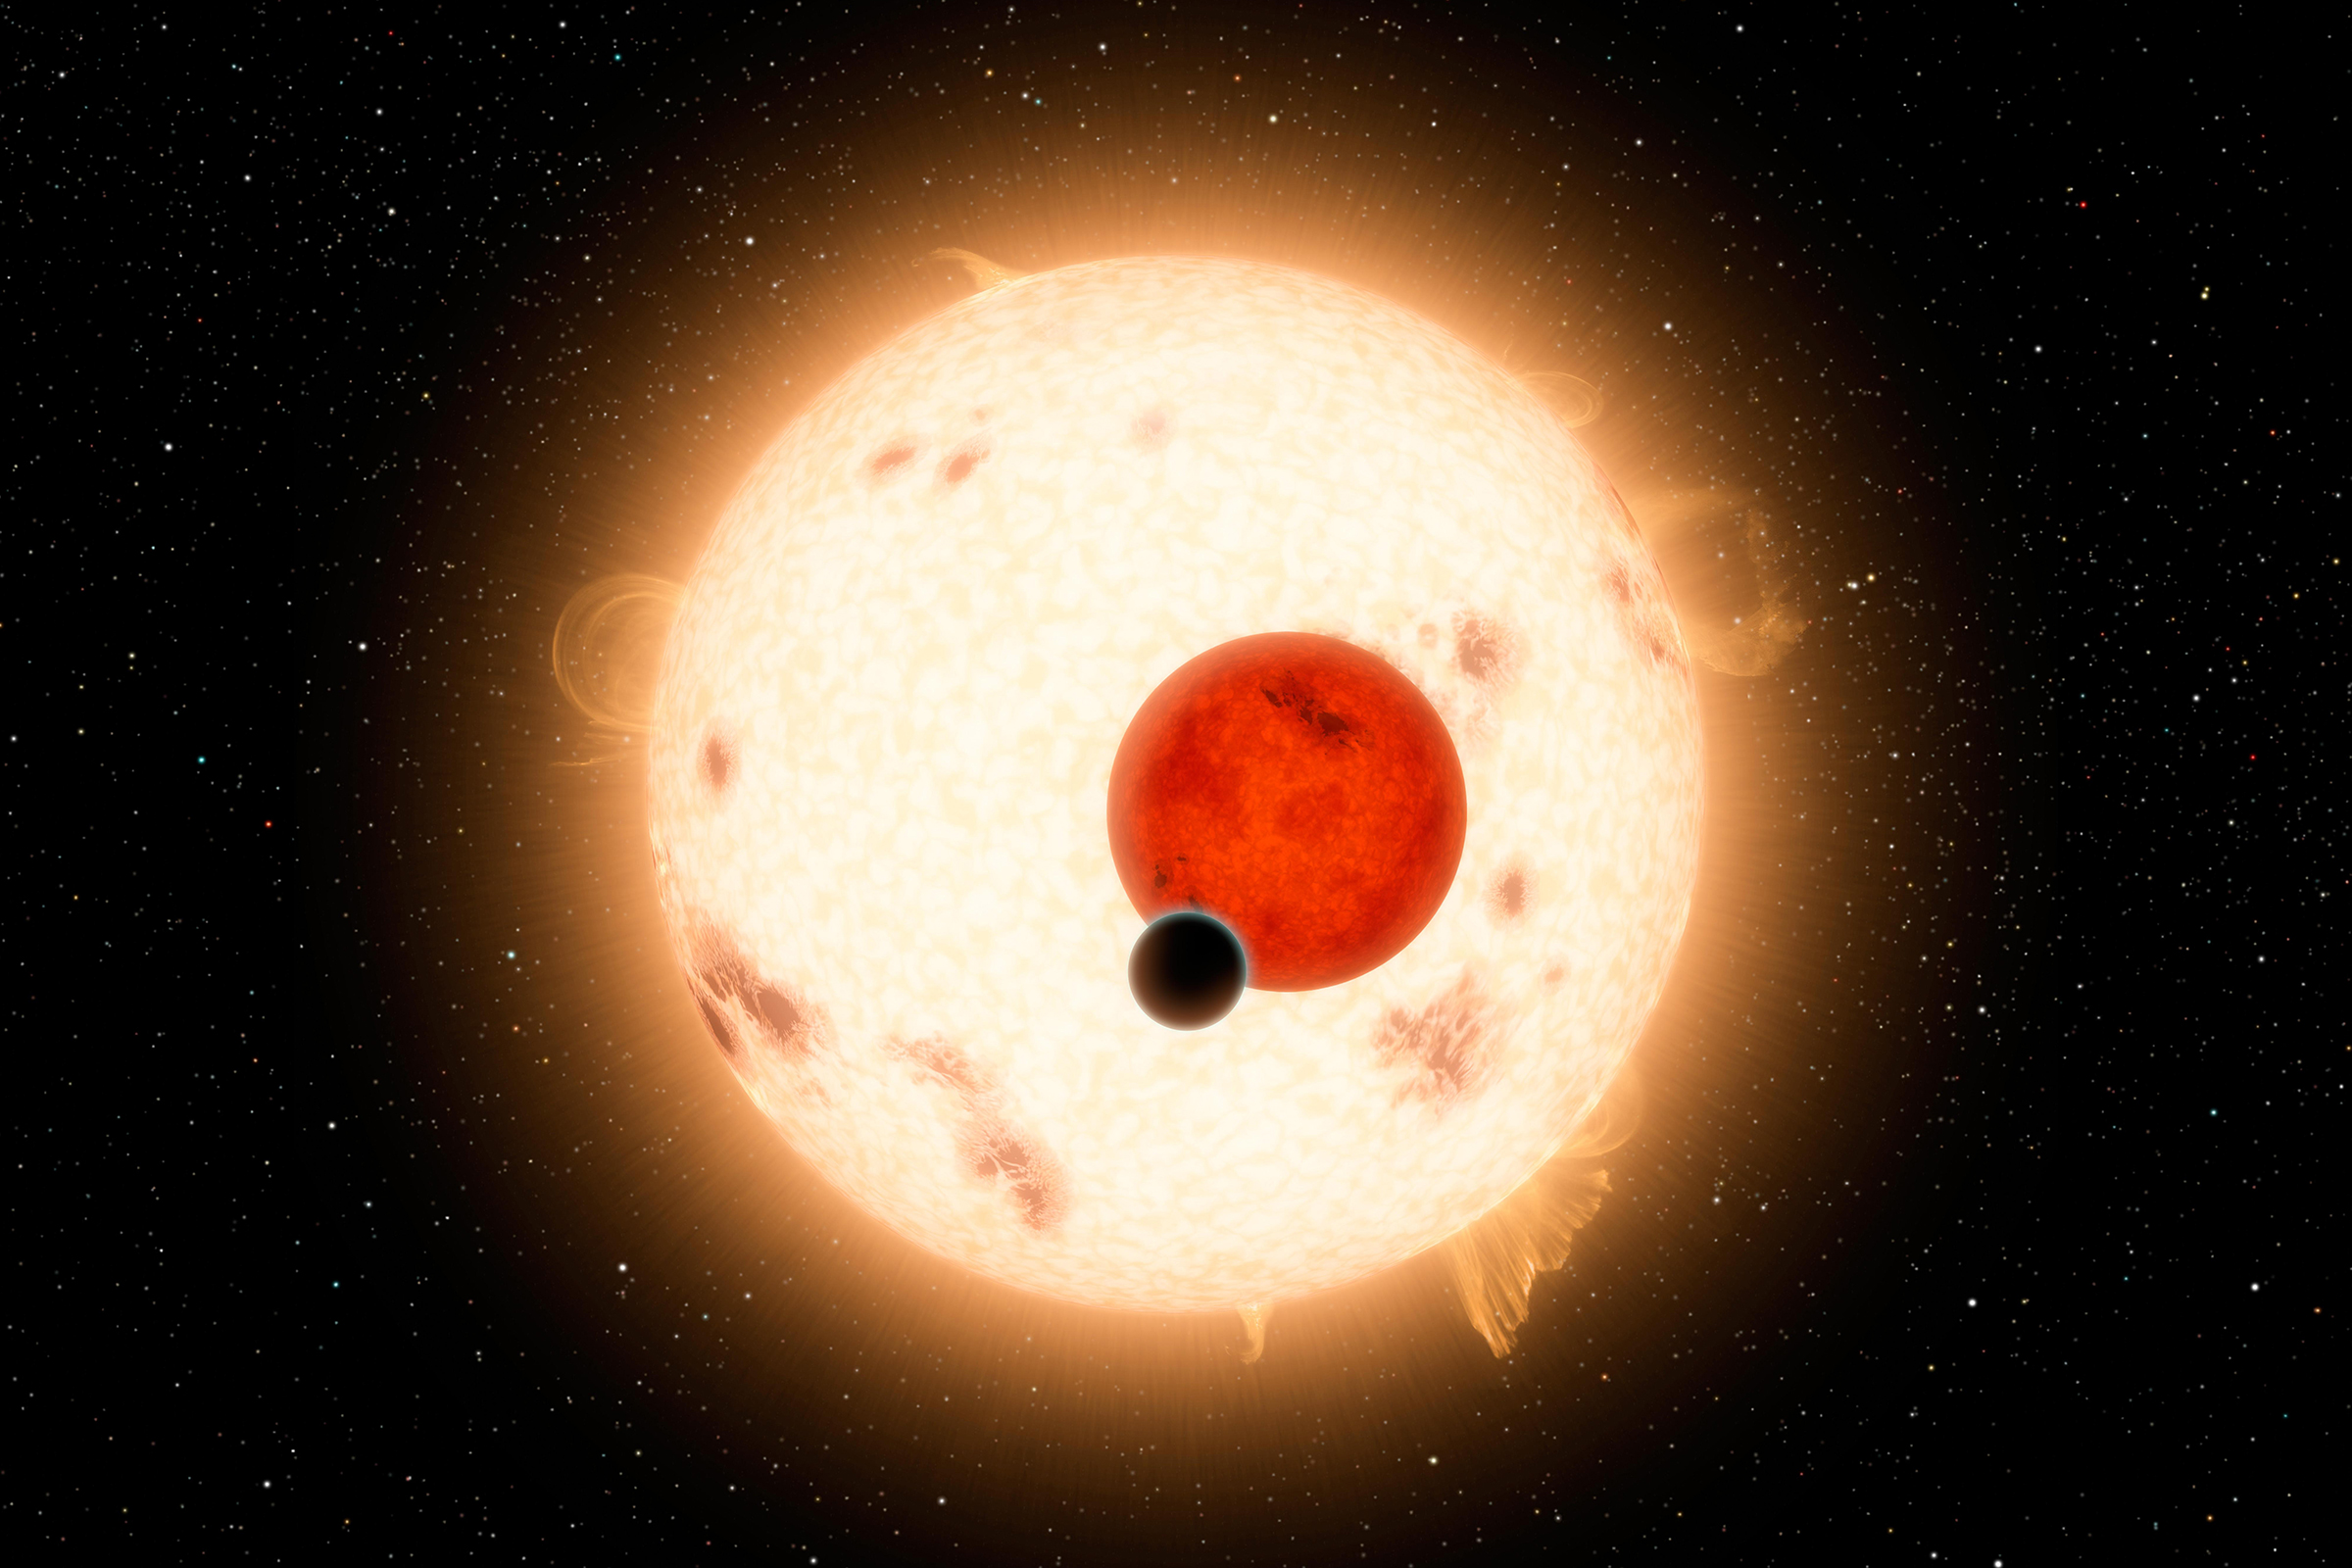 Экзопланета у двойной звезды Kepler-16. Ее удалось обнаружить в 2011 году, когда вторая звезда не затмевала ее. После 2018 года планету невозможно будет увидеть с Земли до 2042 года.

Когда стало известно об открытии планеты, СМИ сравнивали ее с планетой Татуин из &laquo;Звездных войн&raquo;, которая также обращалась вокруг двух звезд.
